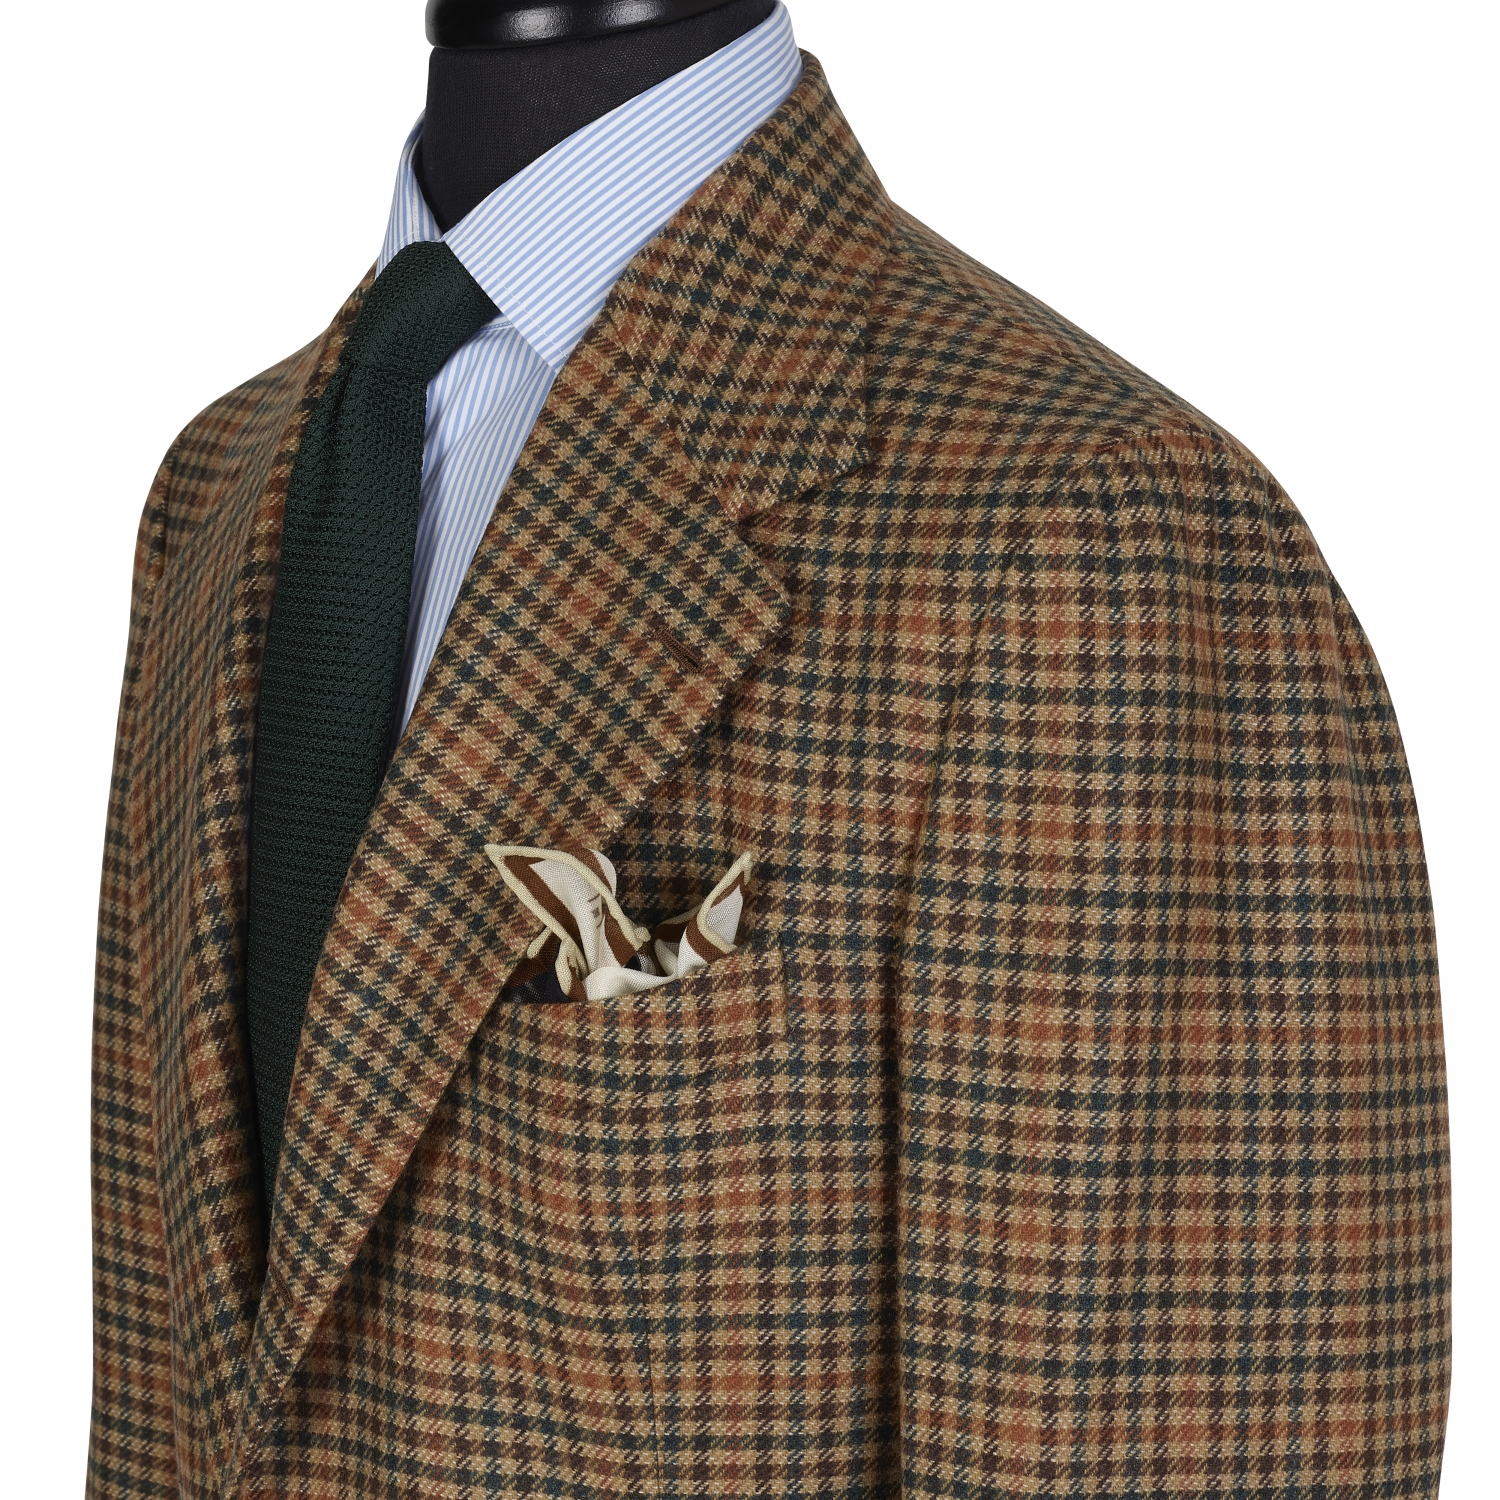 Tweedland The Gentlemen's club: Louis Vuitton Malletier